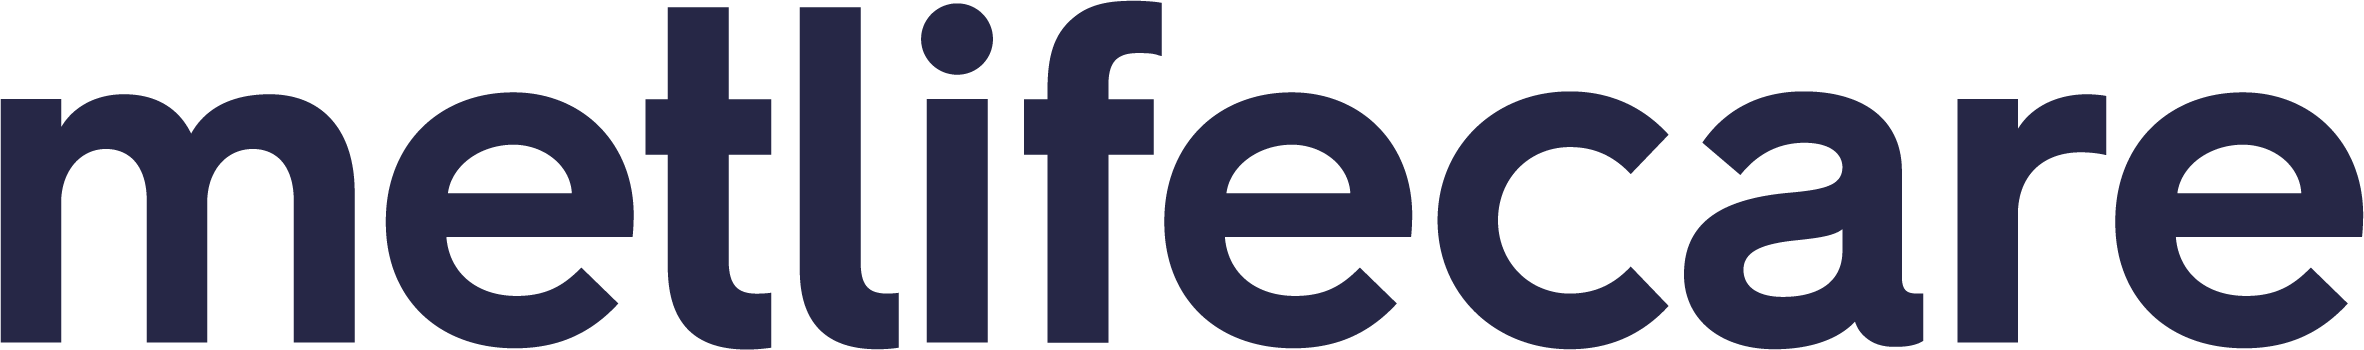 Metlifecare logo